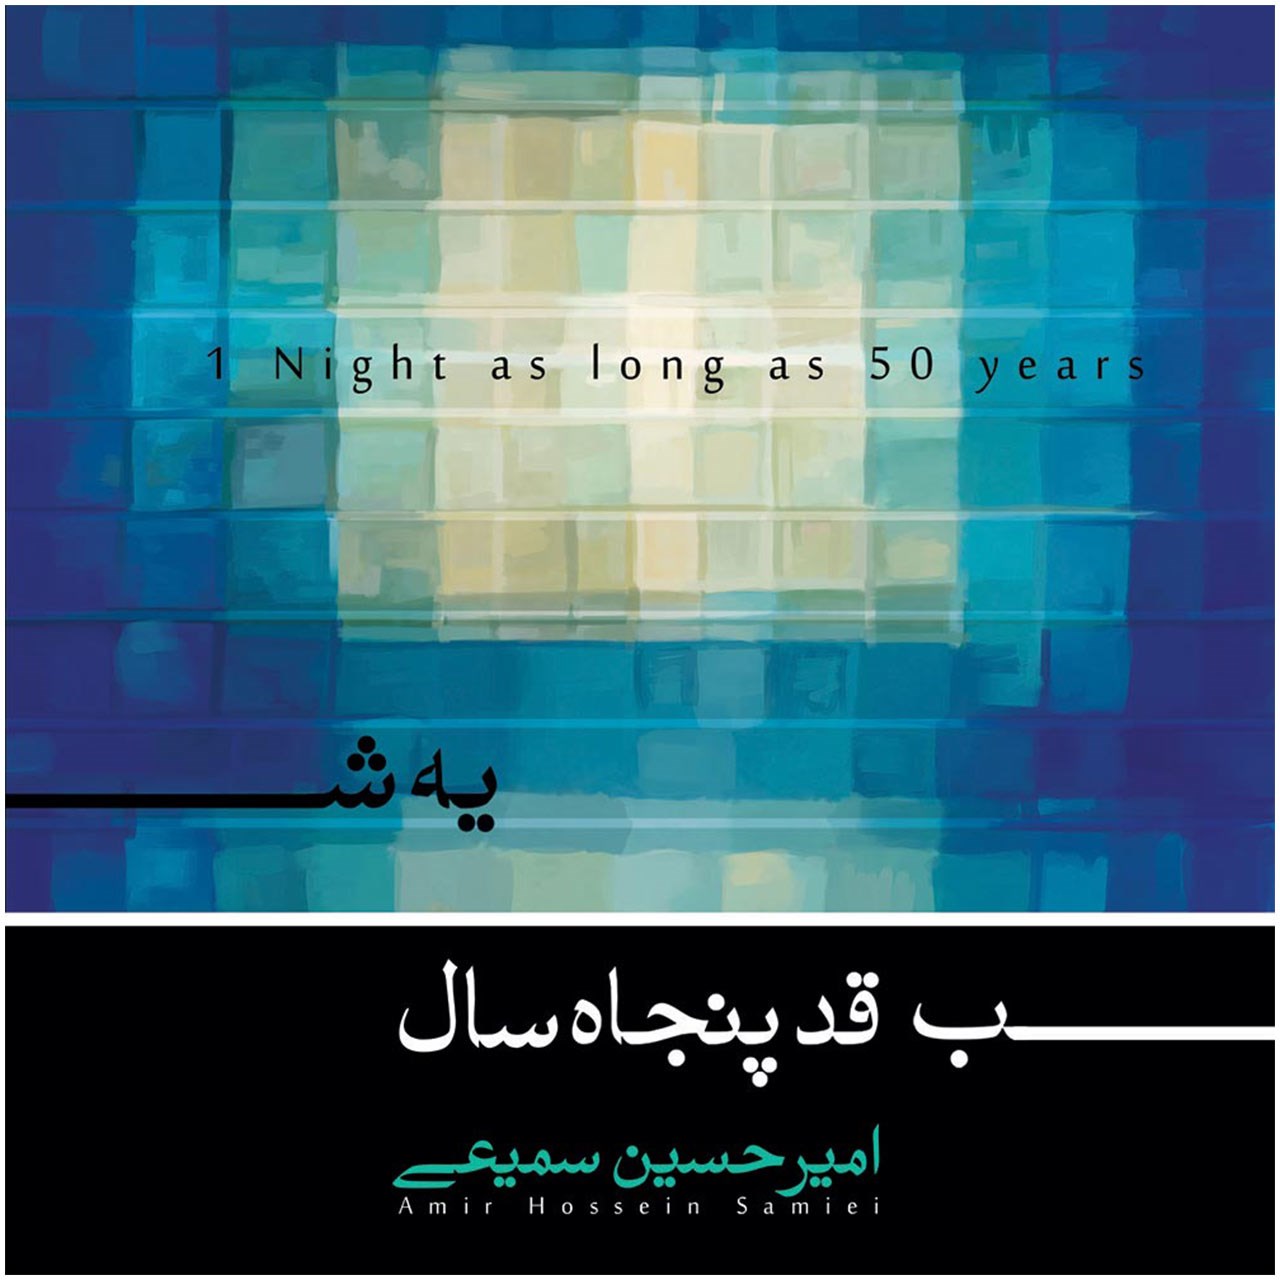 آلبوم موسیقی یه شب قد پنجاه سال اثر امیر حسین سمیعی